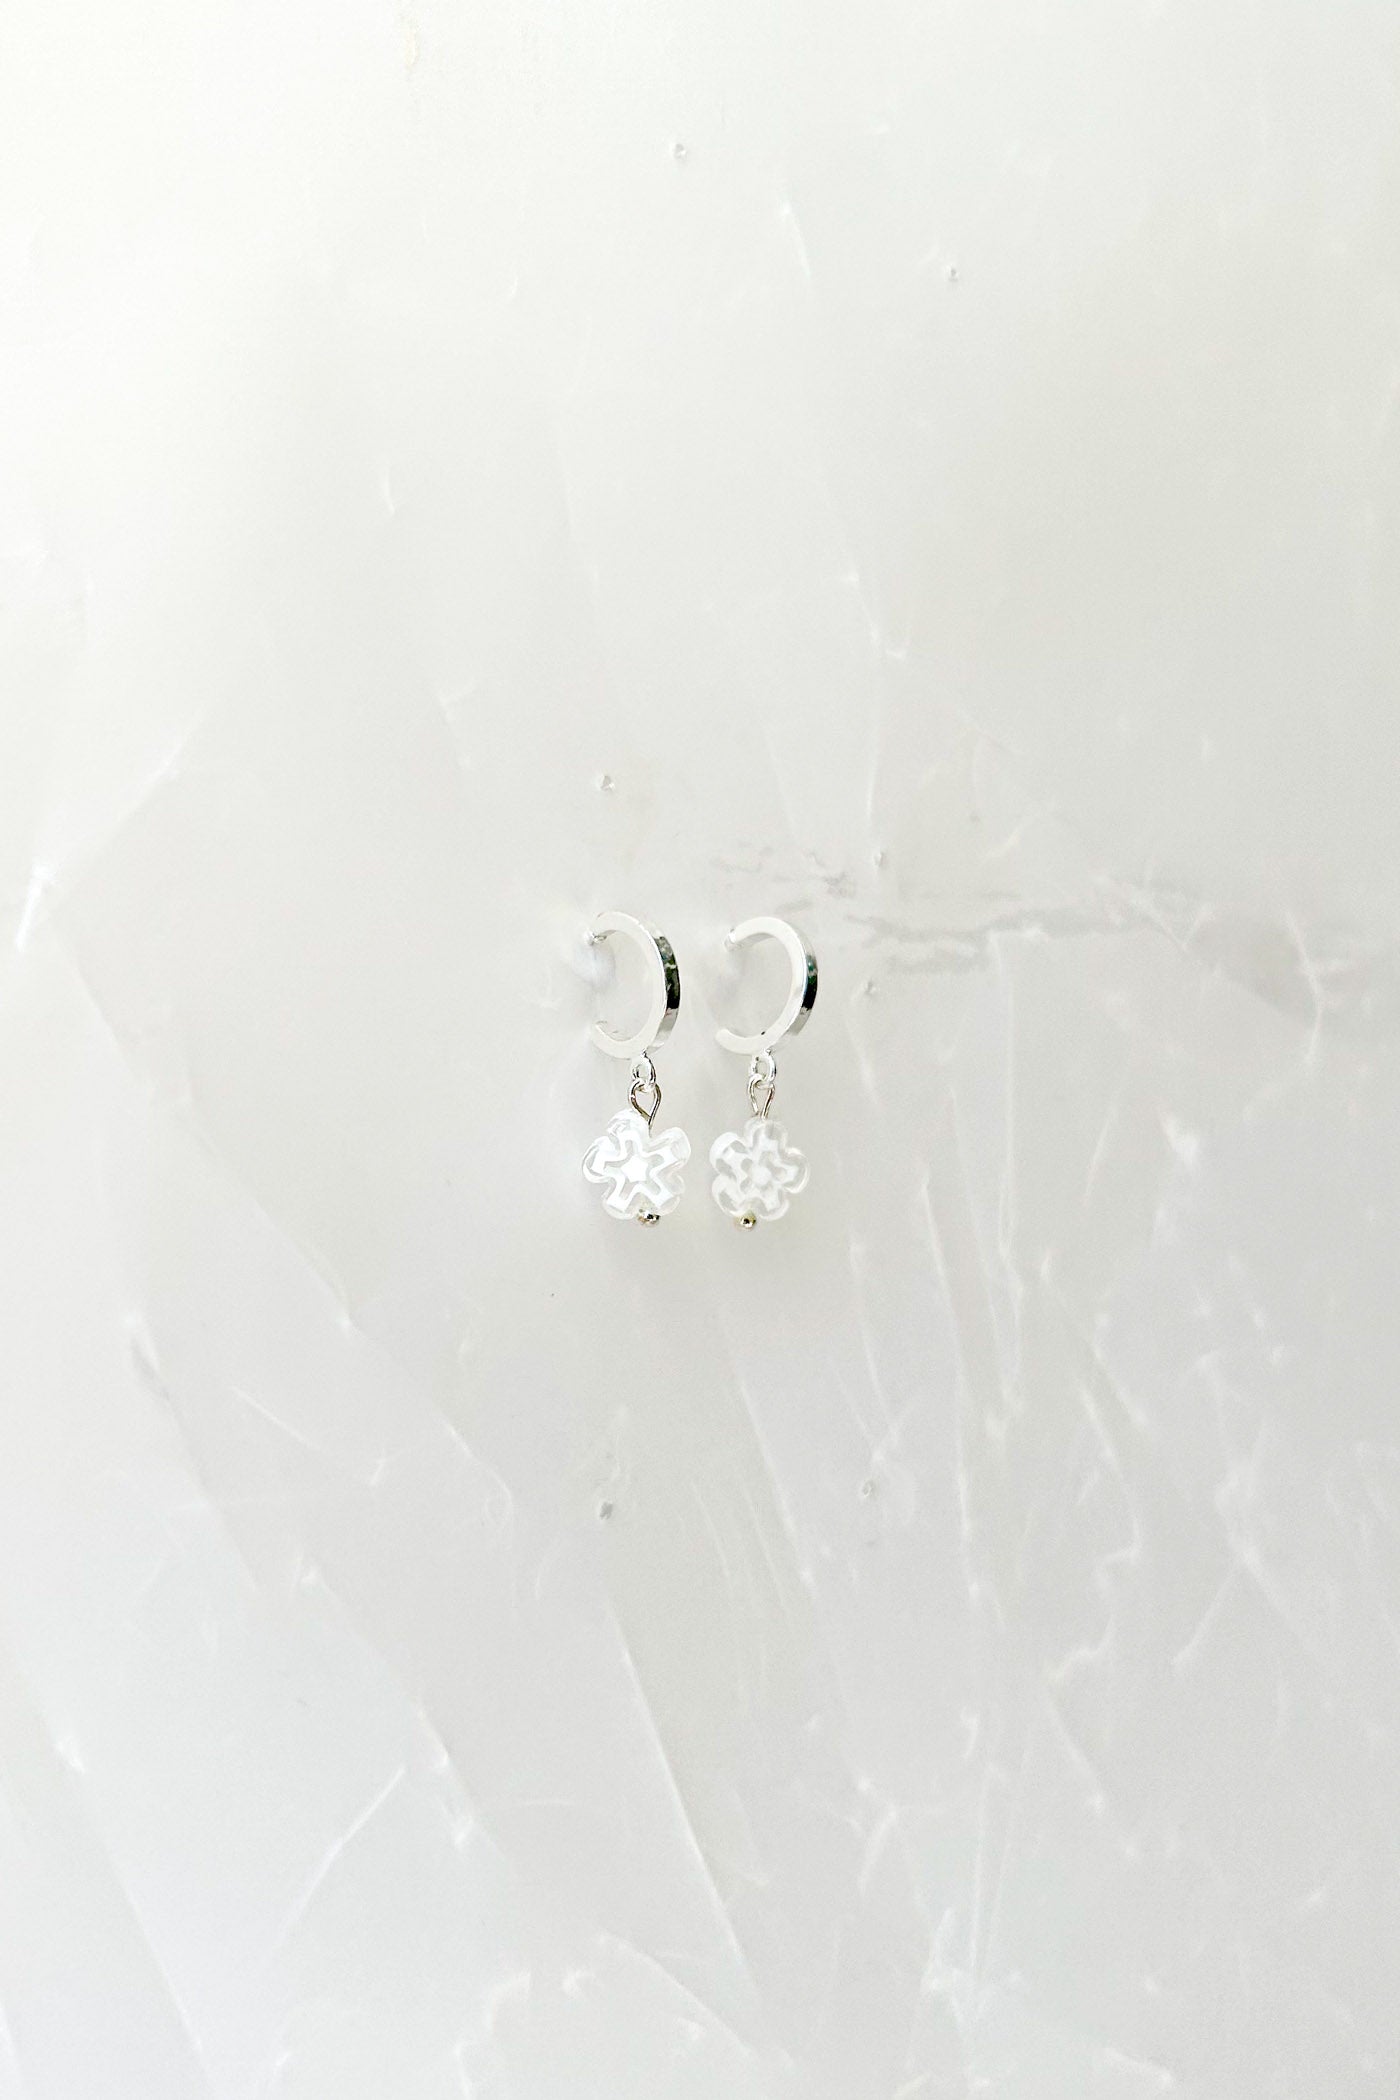 White Daisy Earrings